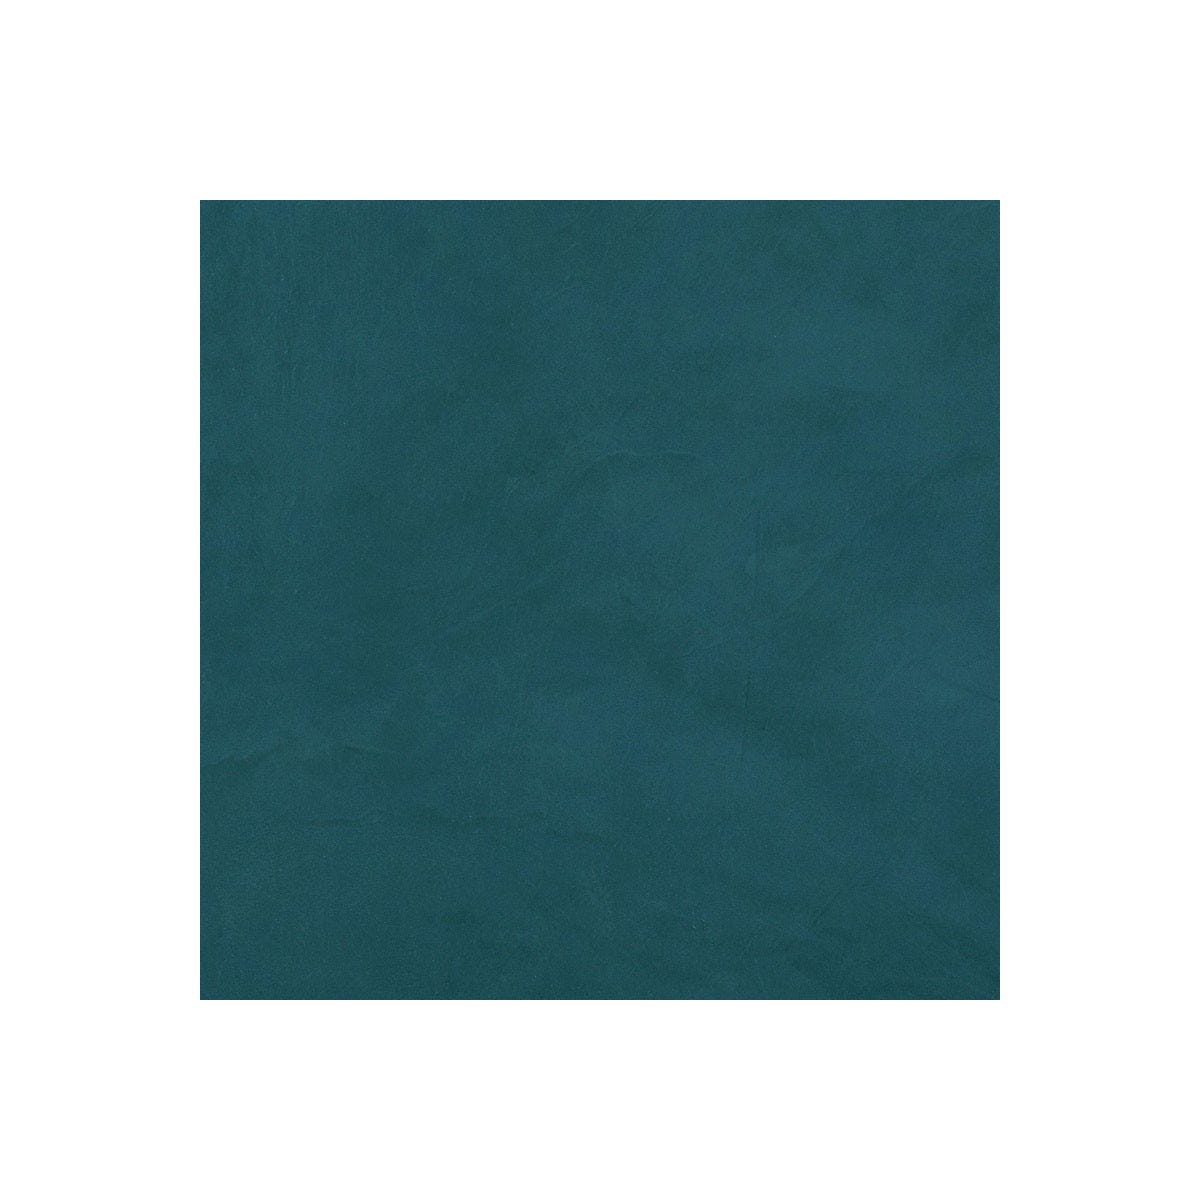 Béton Ciré Escalier - Complet primaire et vernis de finition - En neuf ou rénovation Turquin Bleu - 10 m² (en 2 couches)ARCANE INDUSTRIES 2